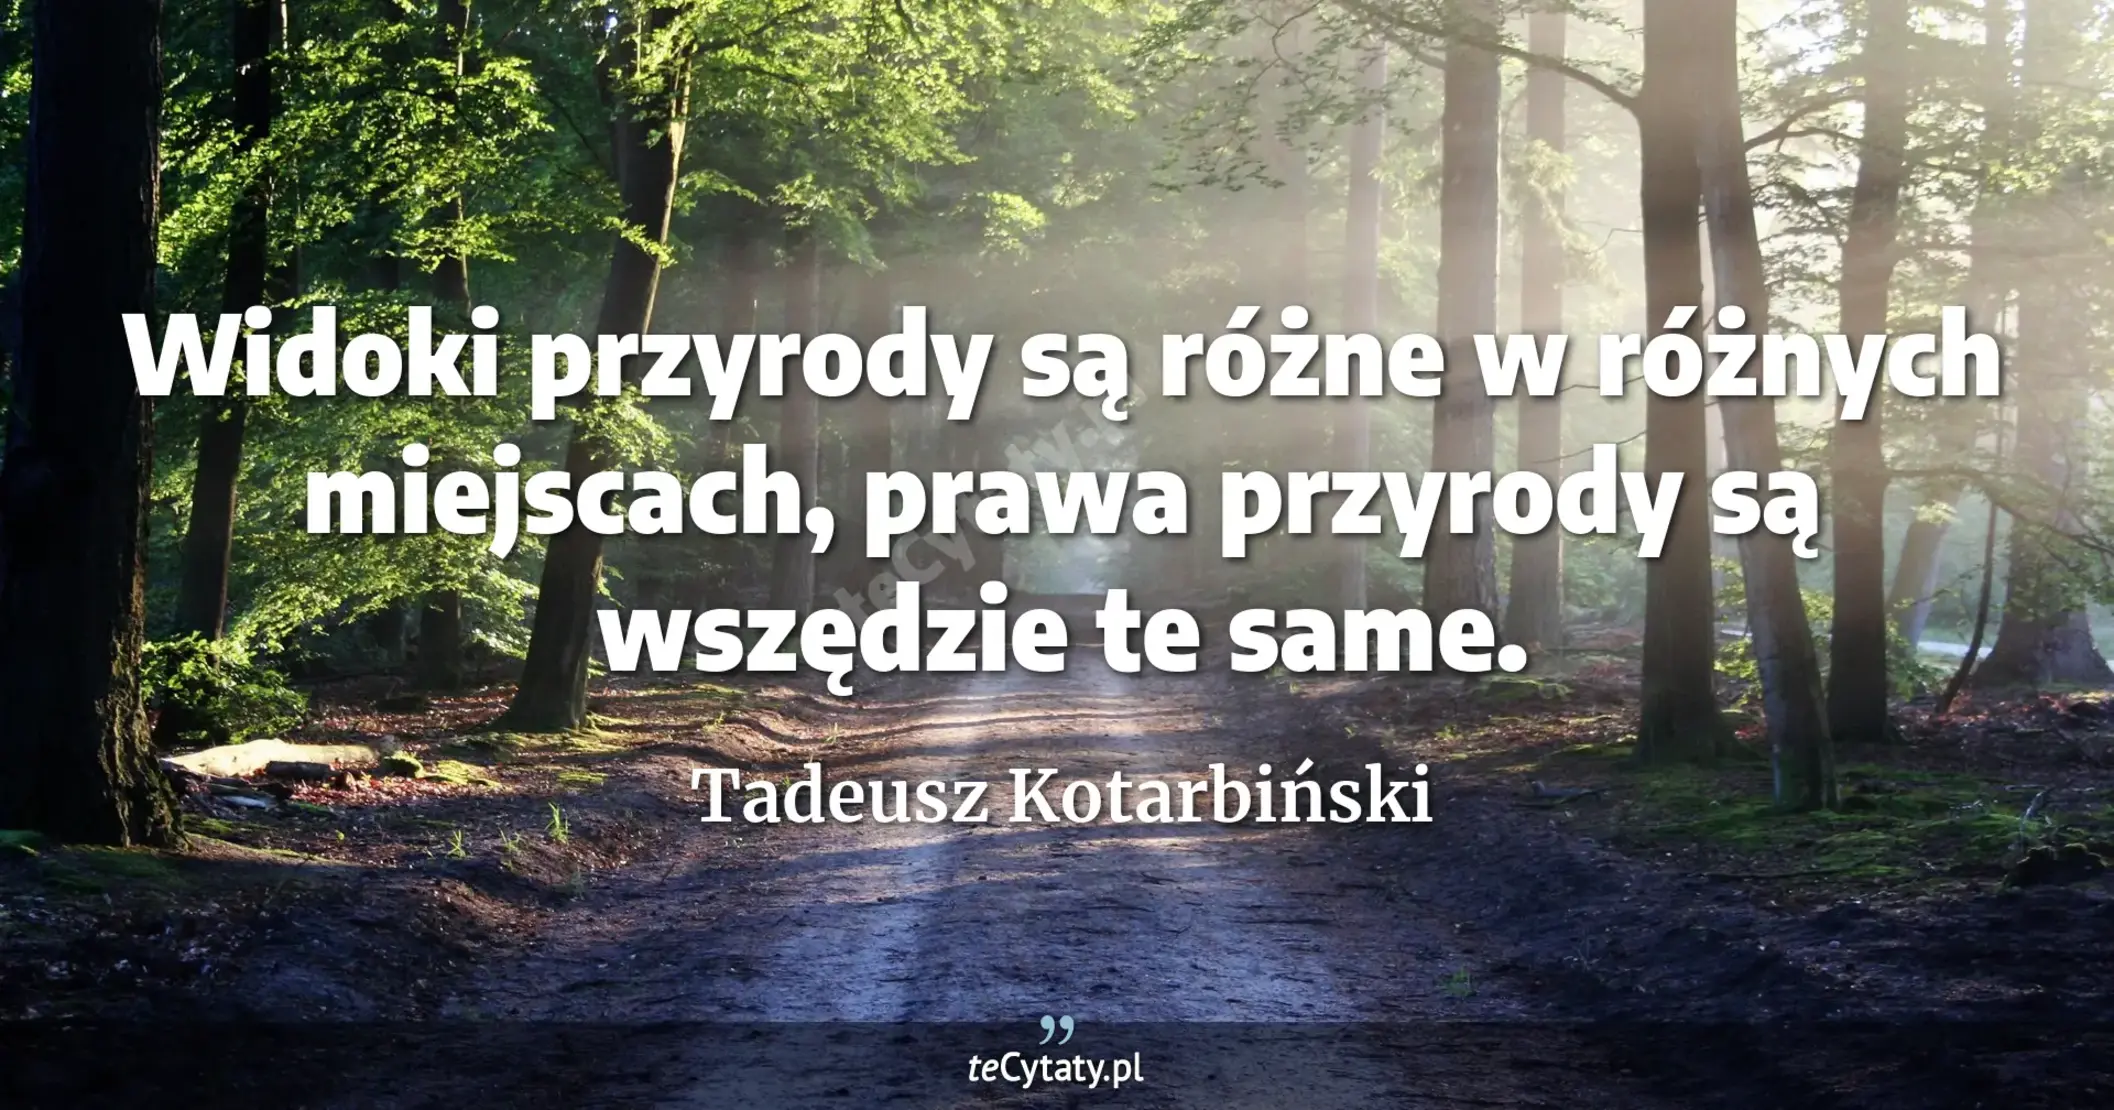 Widoki przyrody są różne w różnych miejscach, prawa przyrody są wszędzie te same. - Tadeusz Kotarbiński